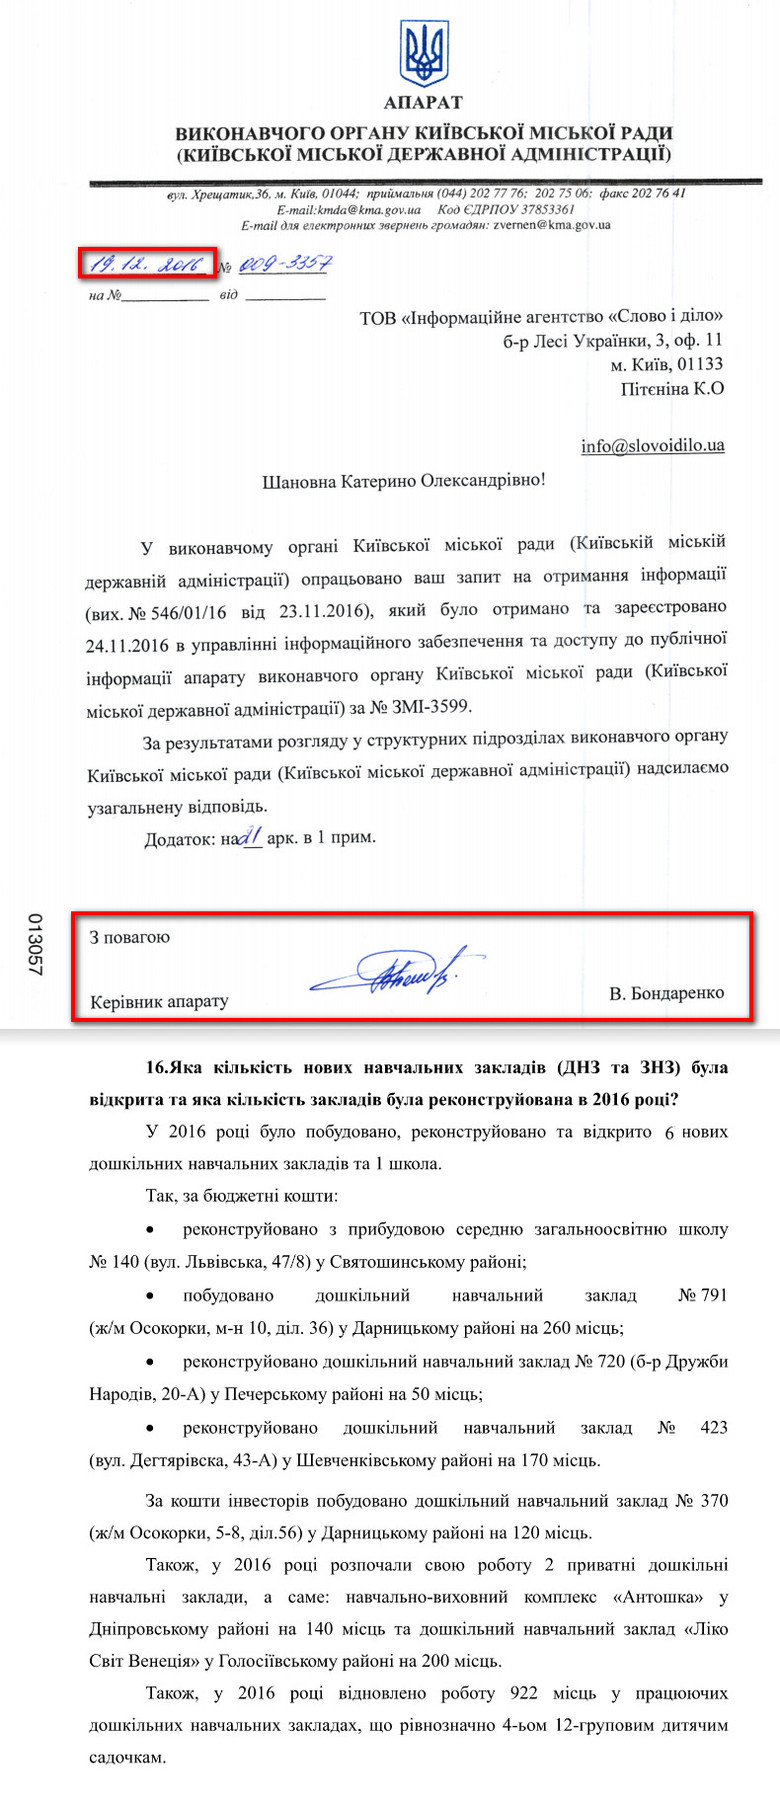 Мер Києва Віталій Кличко ще в 2015 році пообіцяв відреконструювати 16 столичних навчальних закладів.